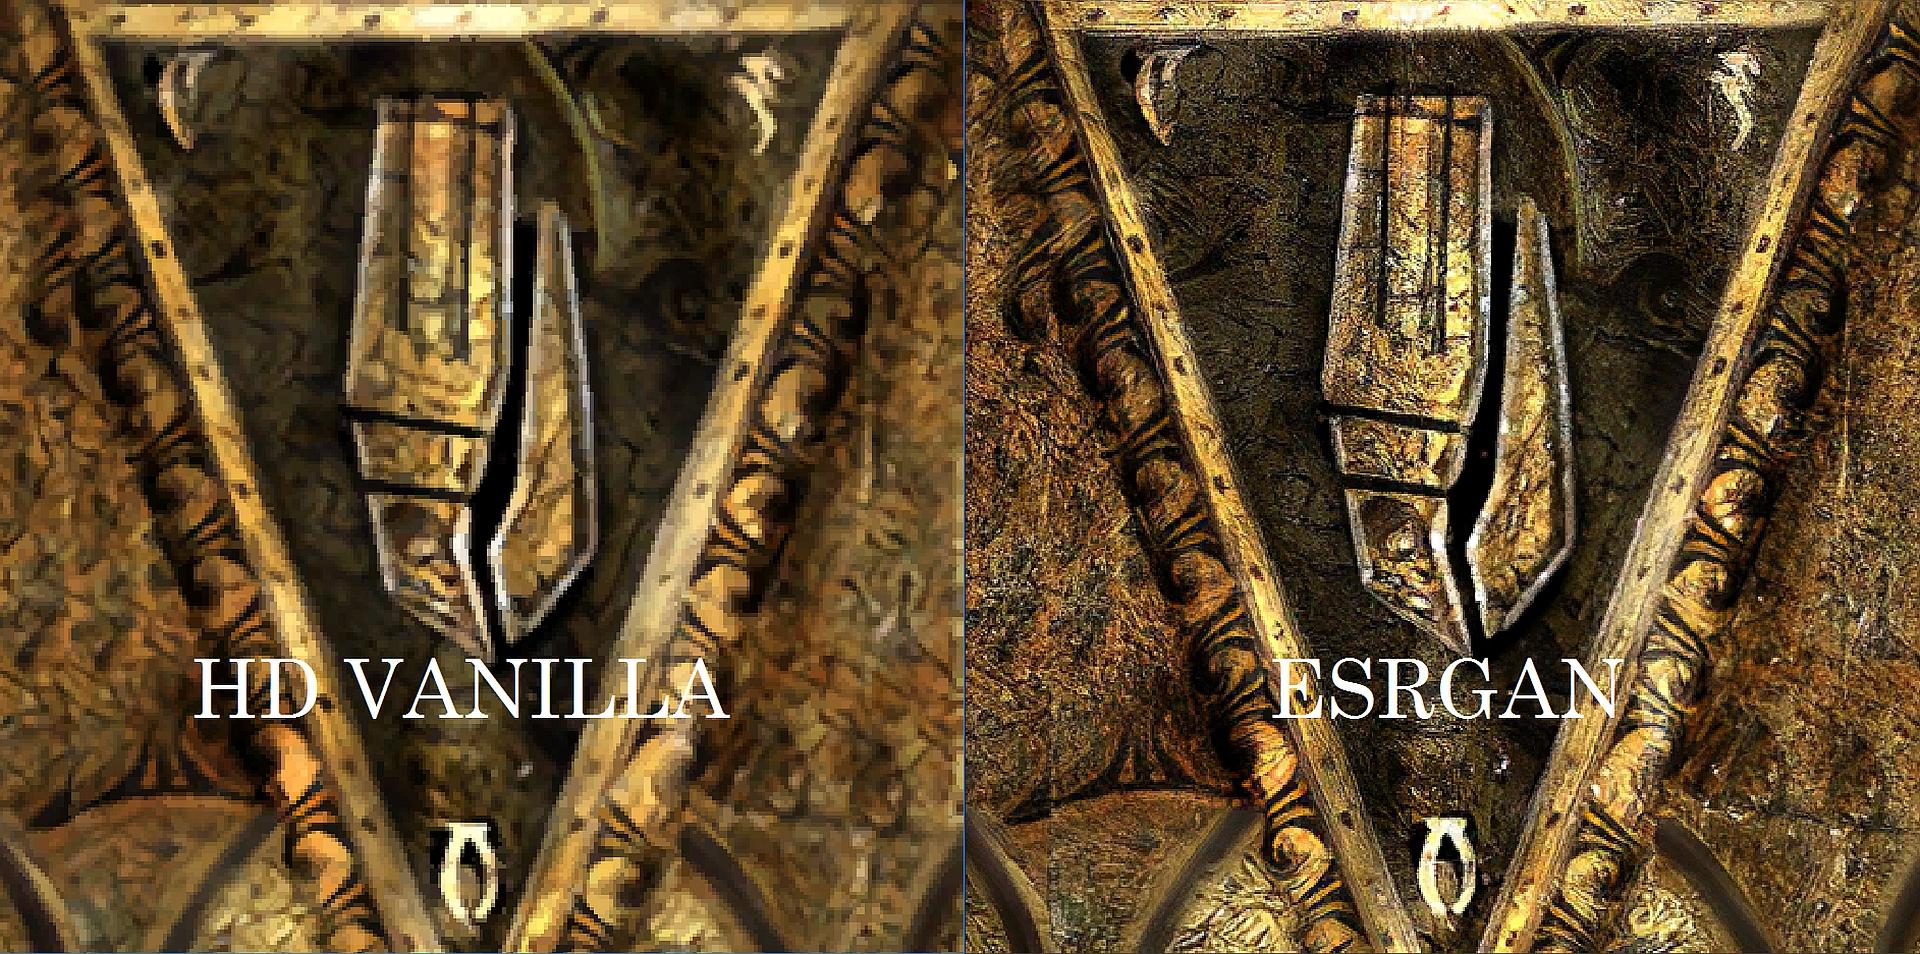 comparaison entre Morrowind HD et l'image ESRGAN